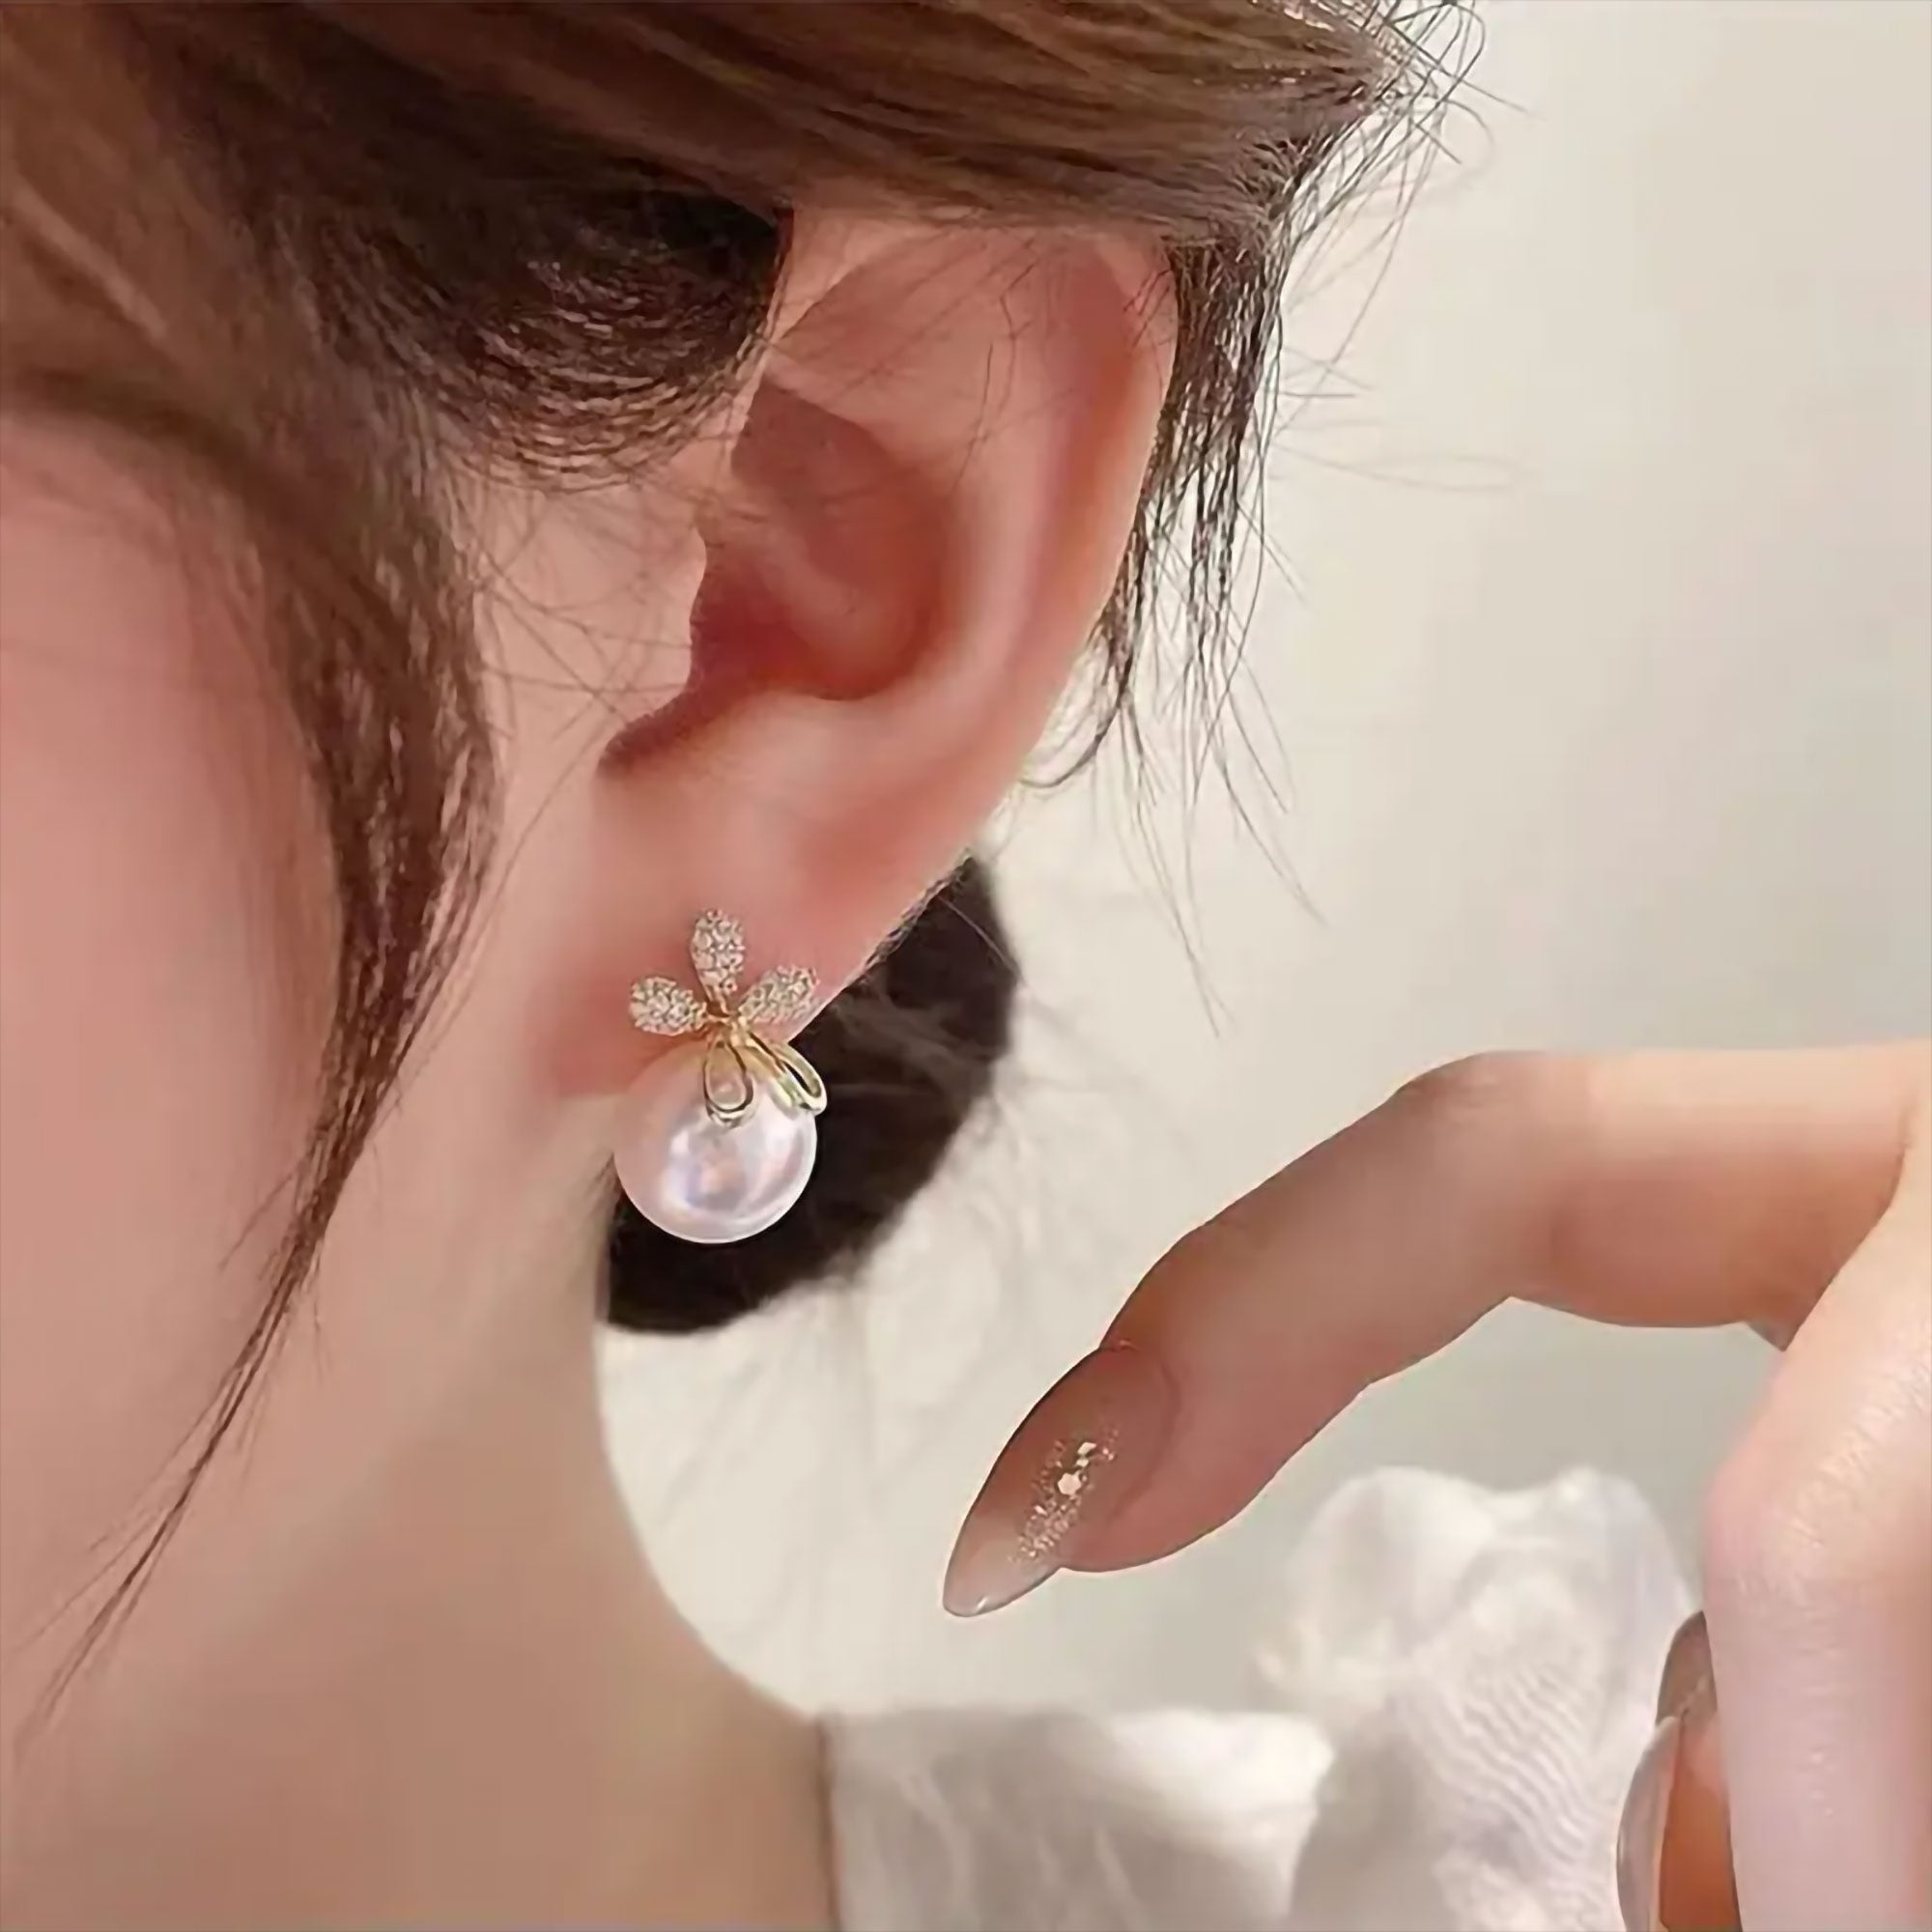 Share more than 259 white moti earrings best